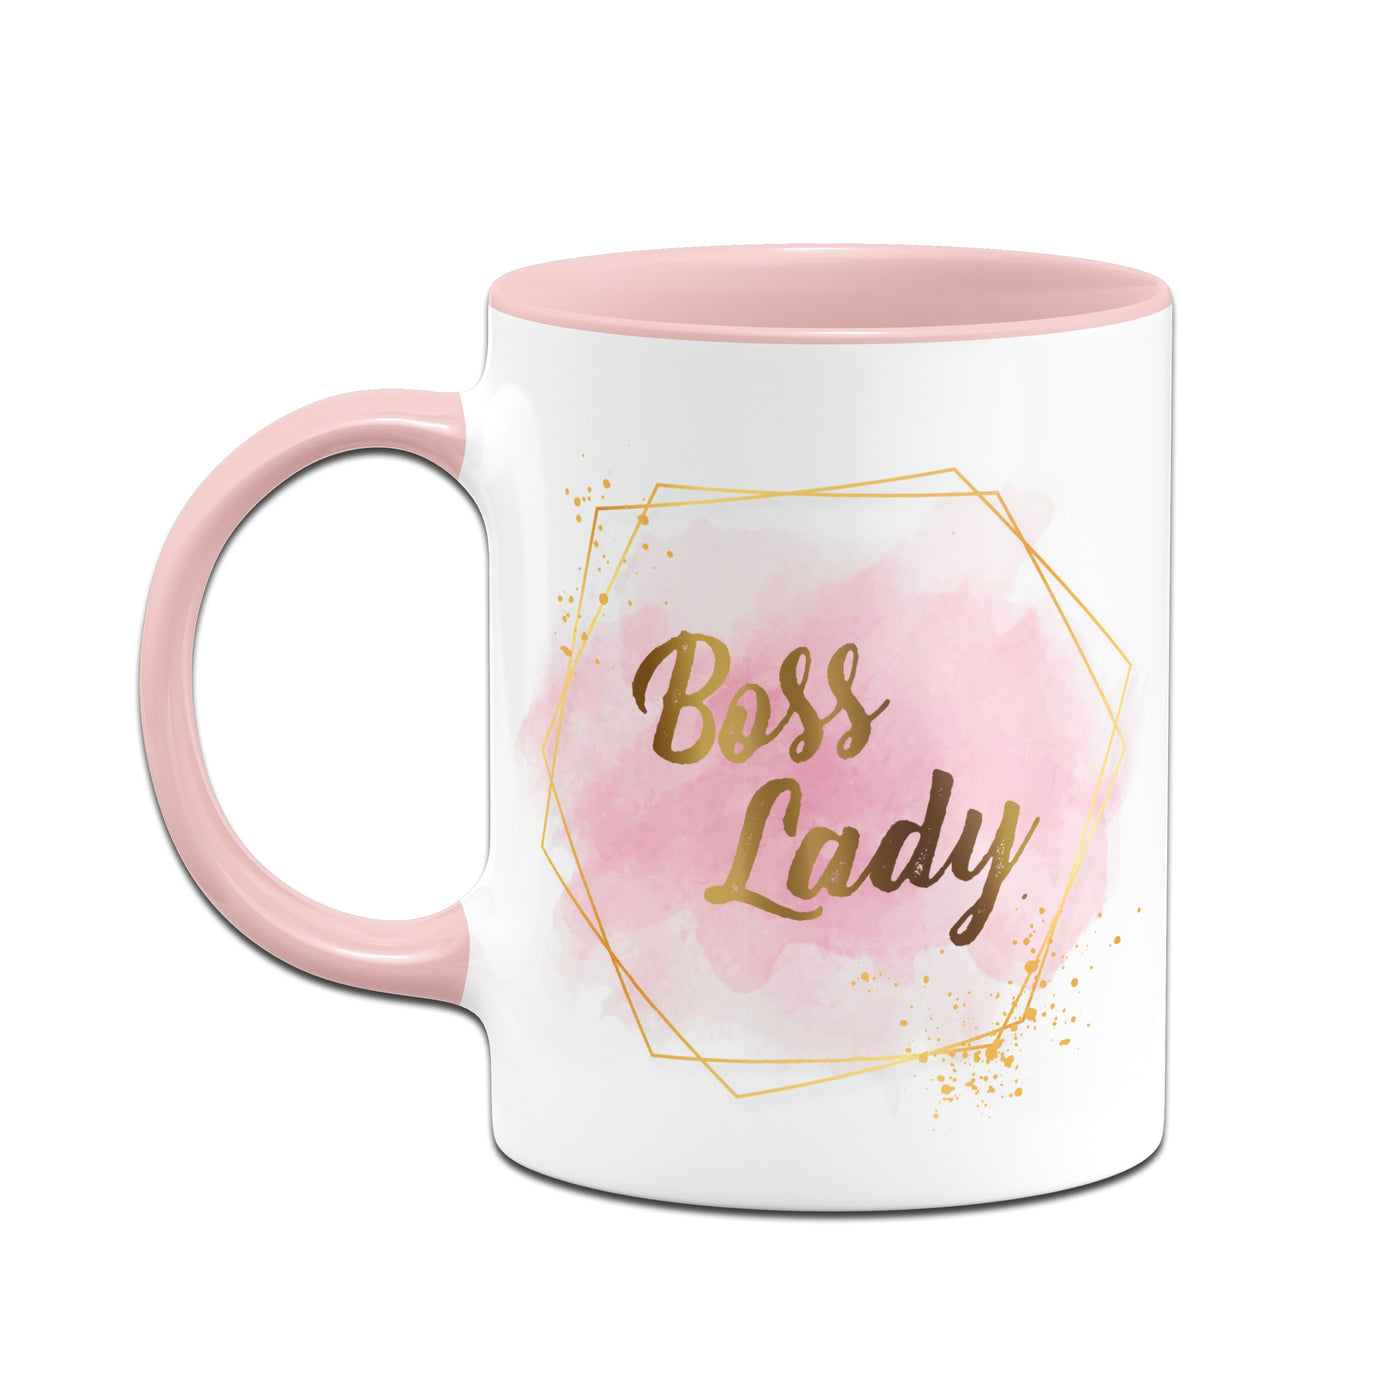 Bild: Tasse - Boss Lady Geschenkidee